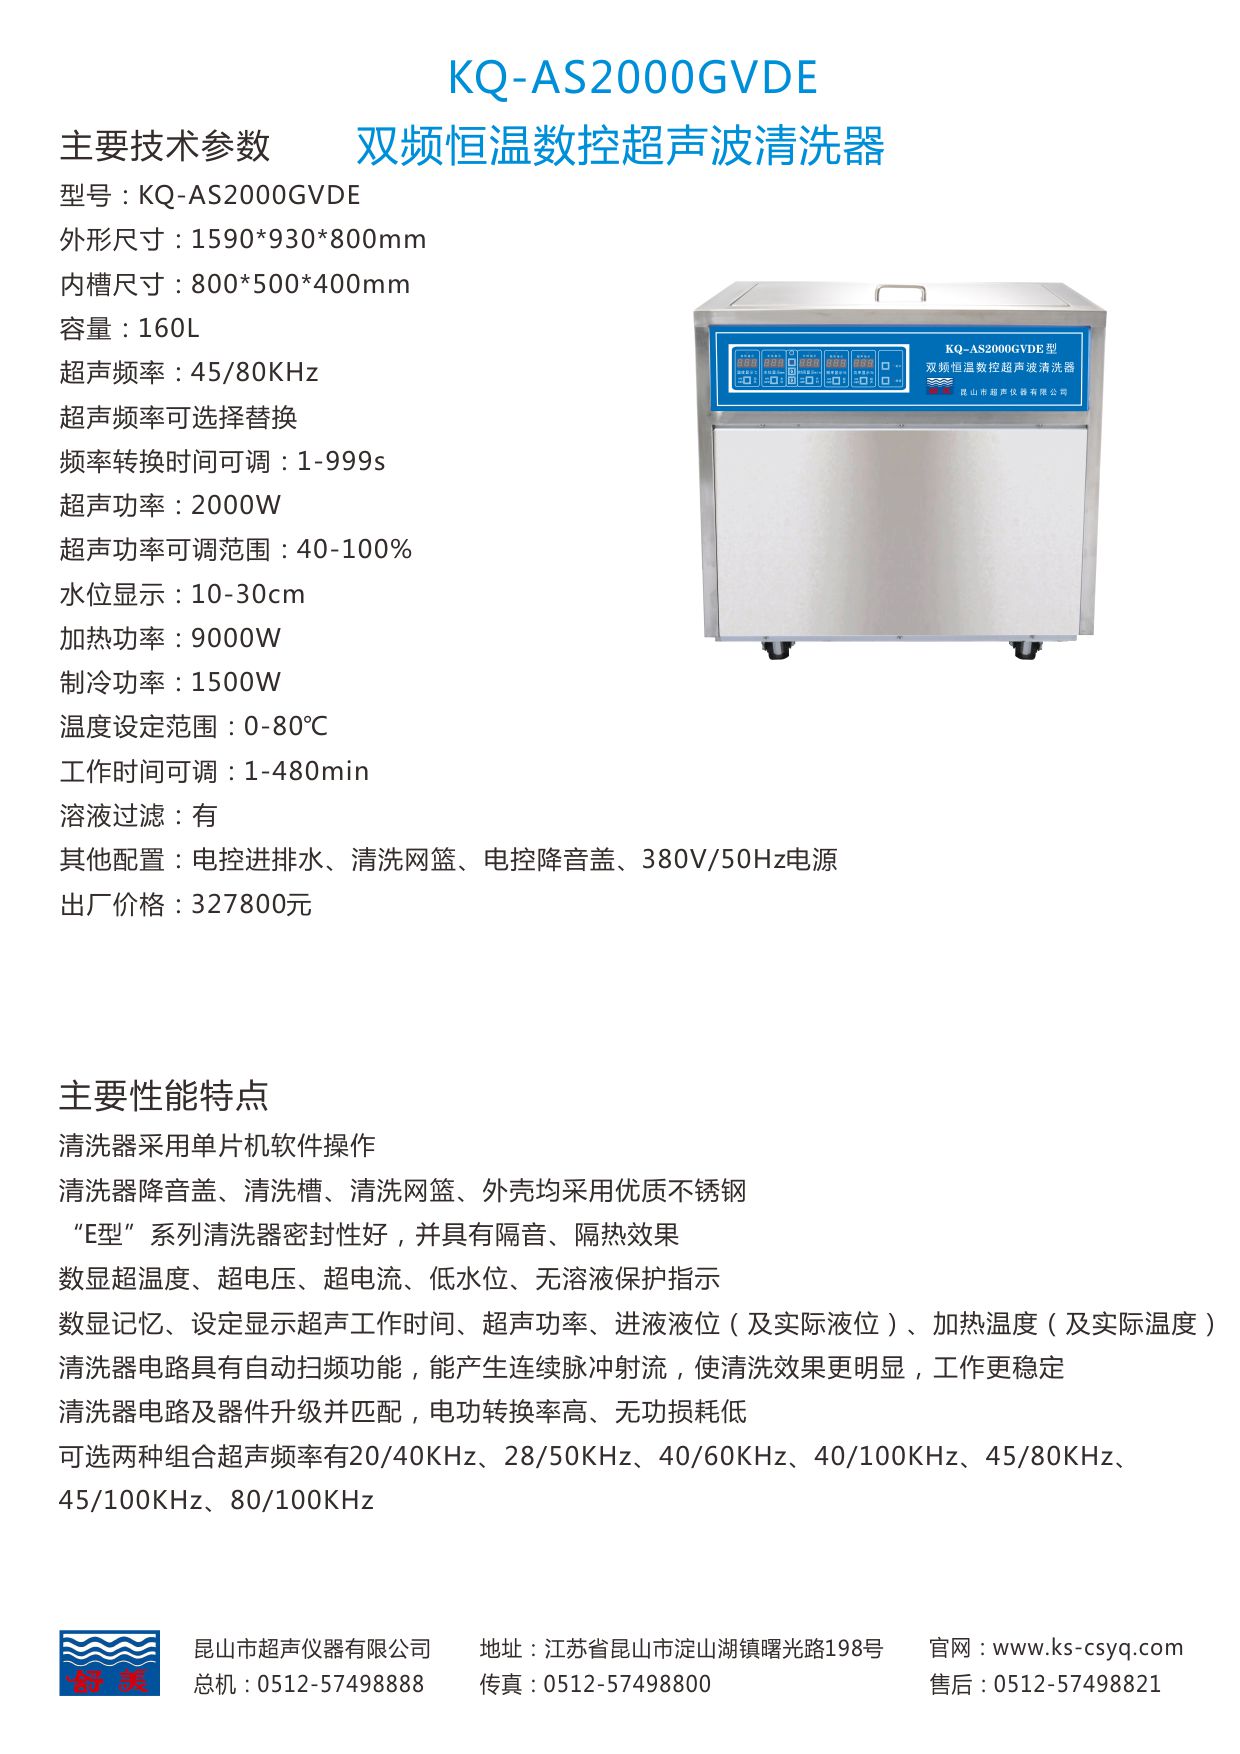 KQ-AS2000GVDE非标超声波清洗机